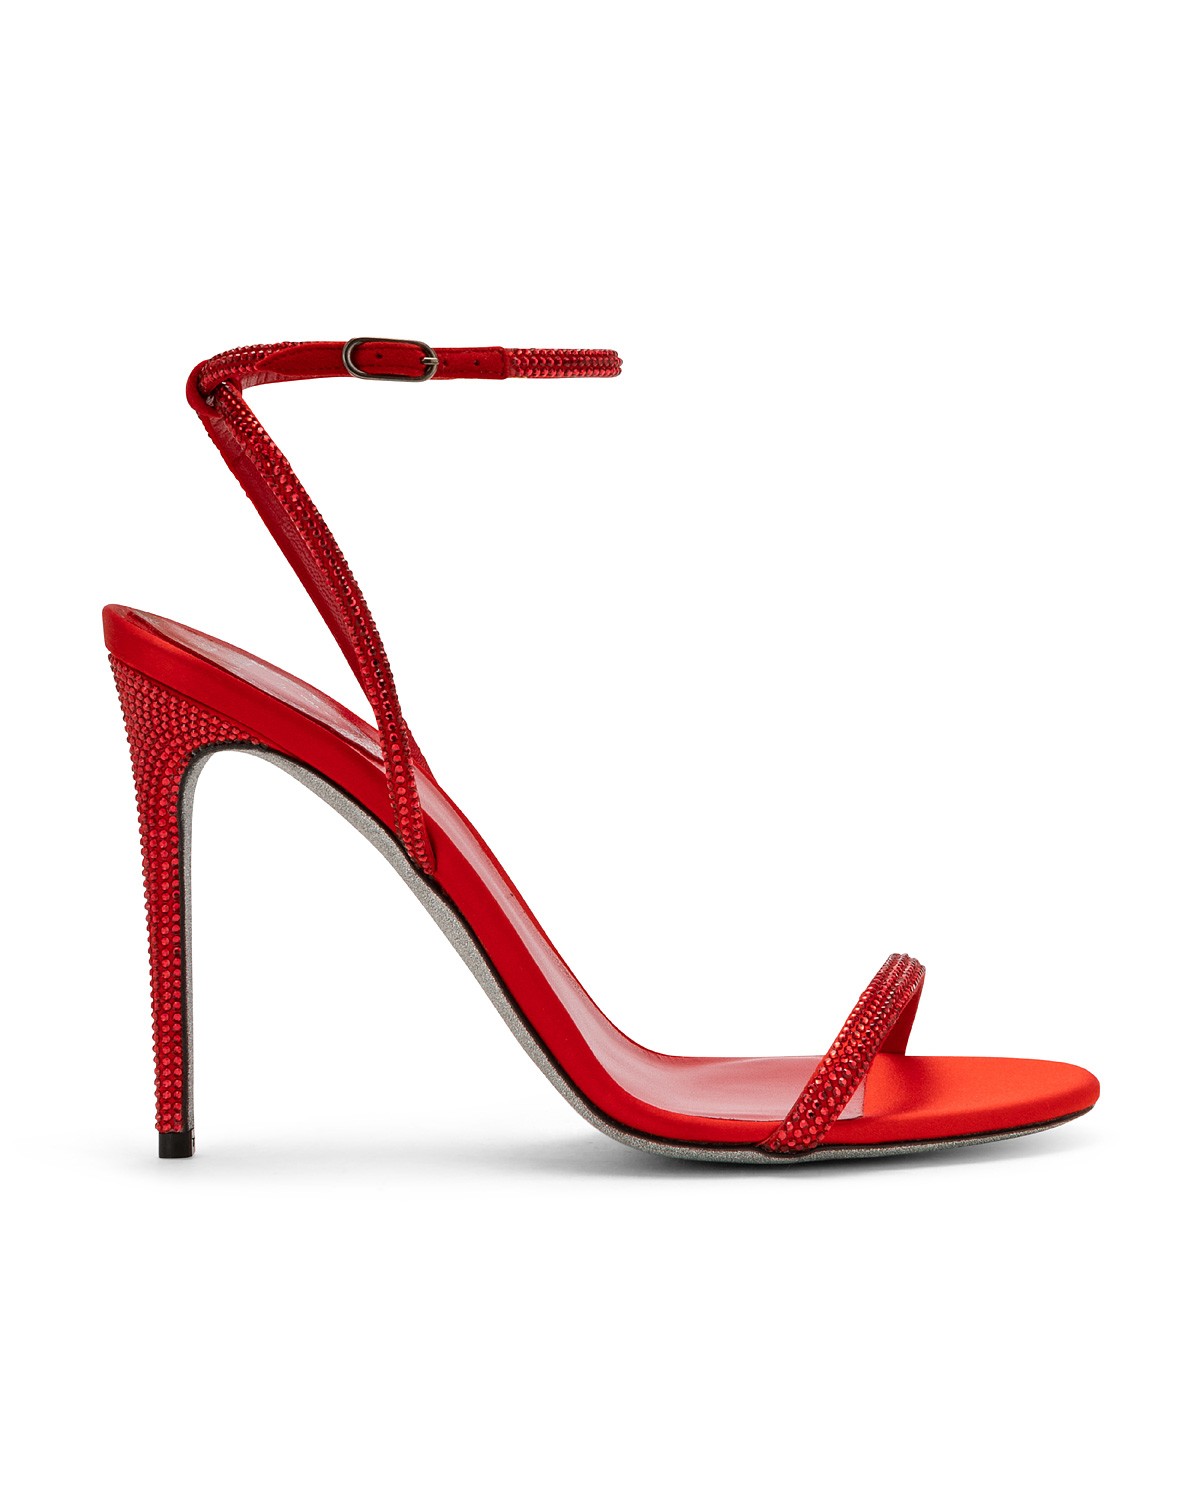 Sandali gioiello rossi Renè Caovilla con tacco a 890 euro